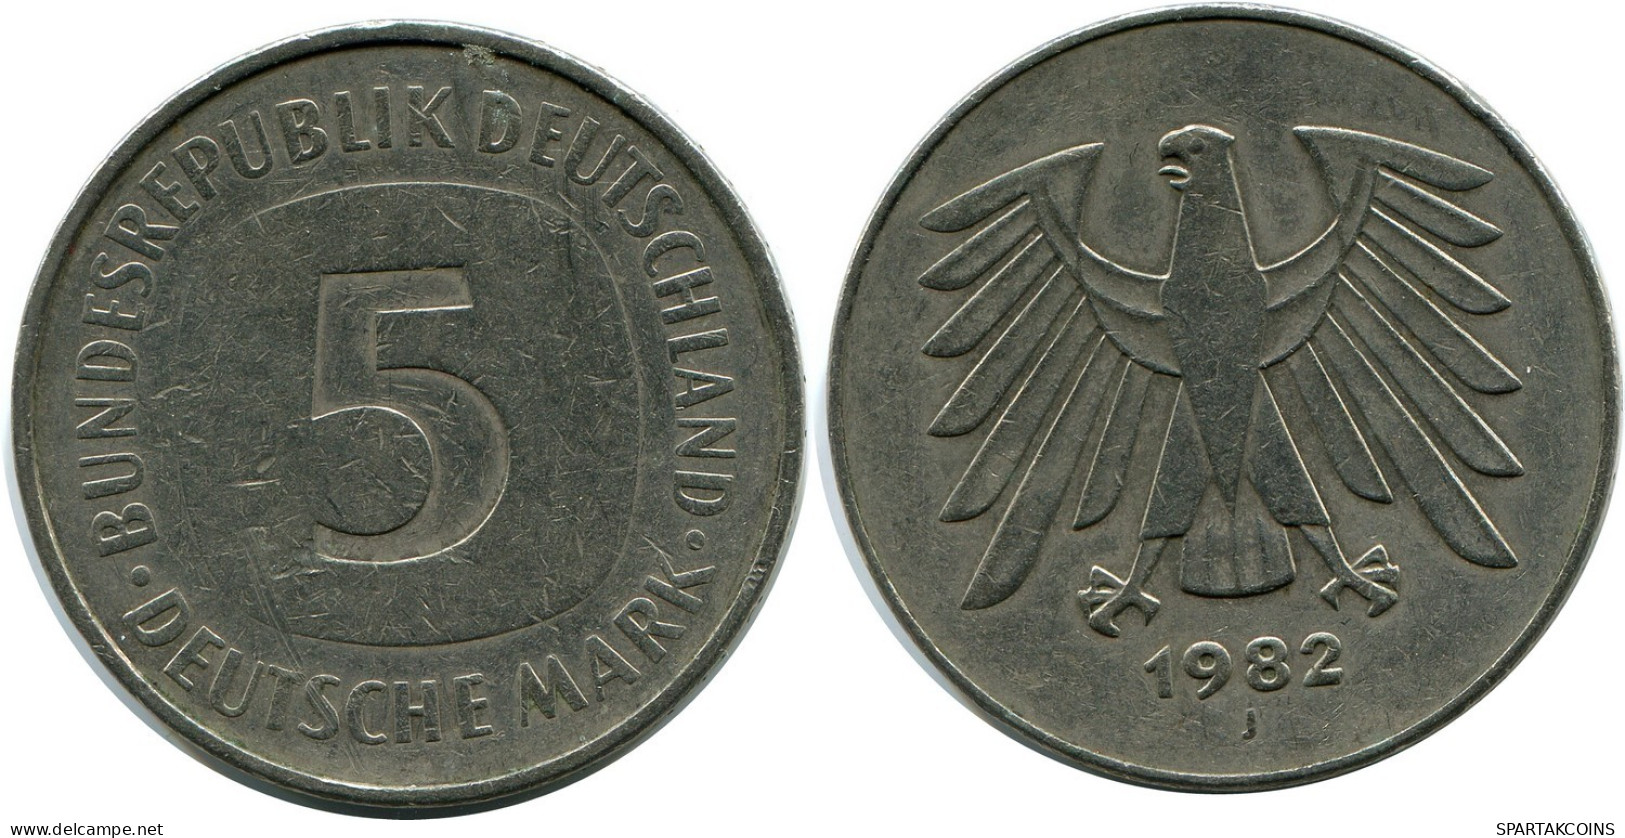 5 DM 1982 J BRD DEUTSCHLAND Münze GERMANY #AZ485.D.A - 5 Mark